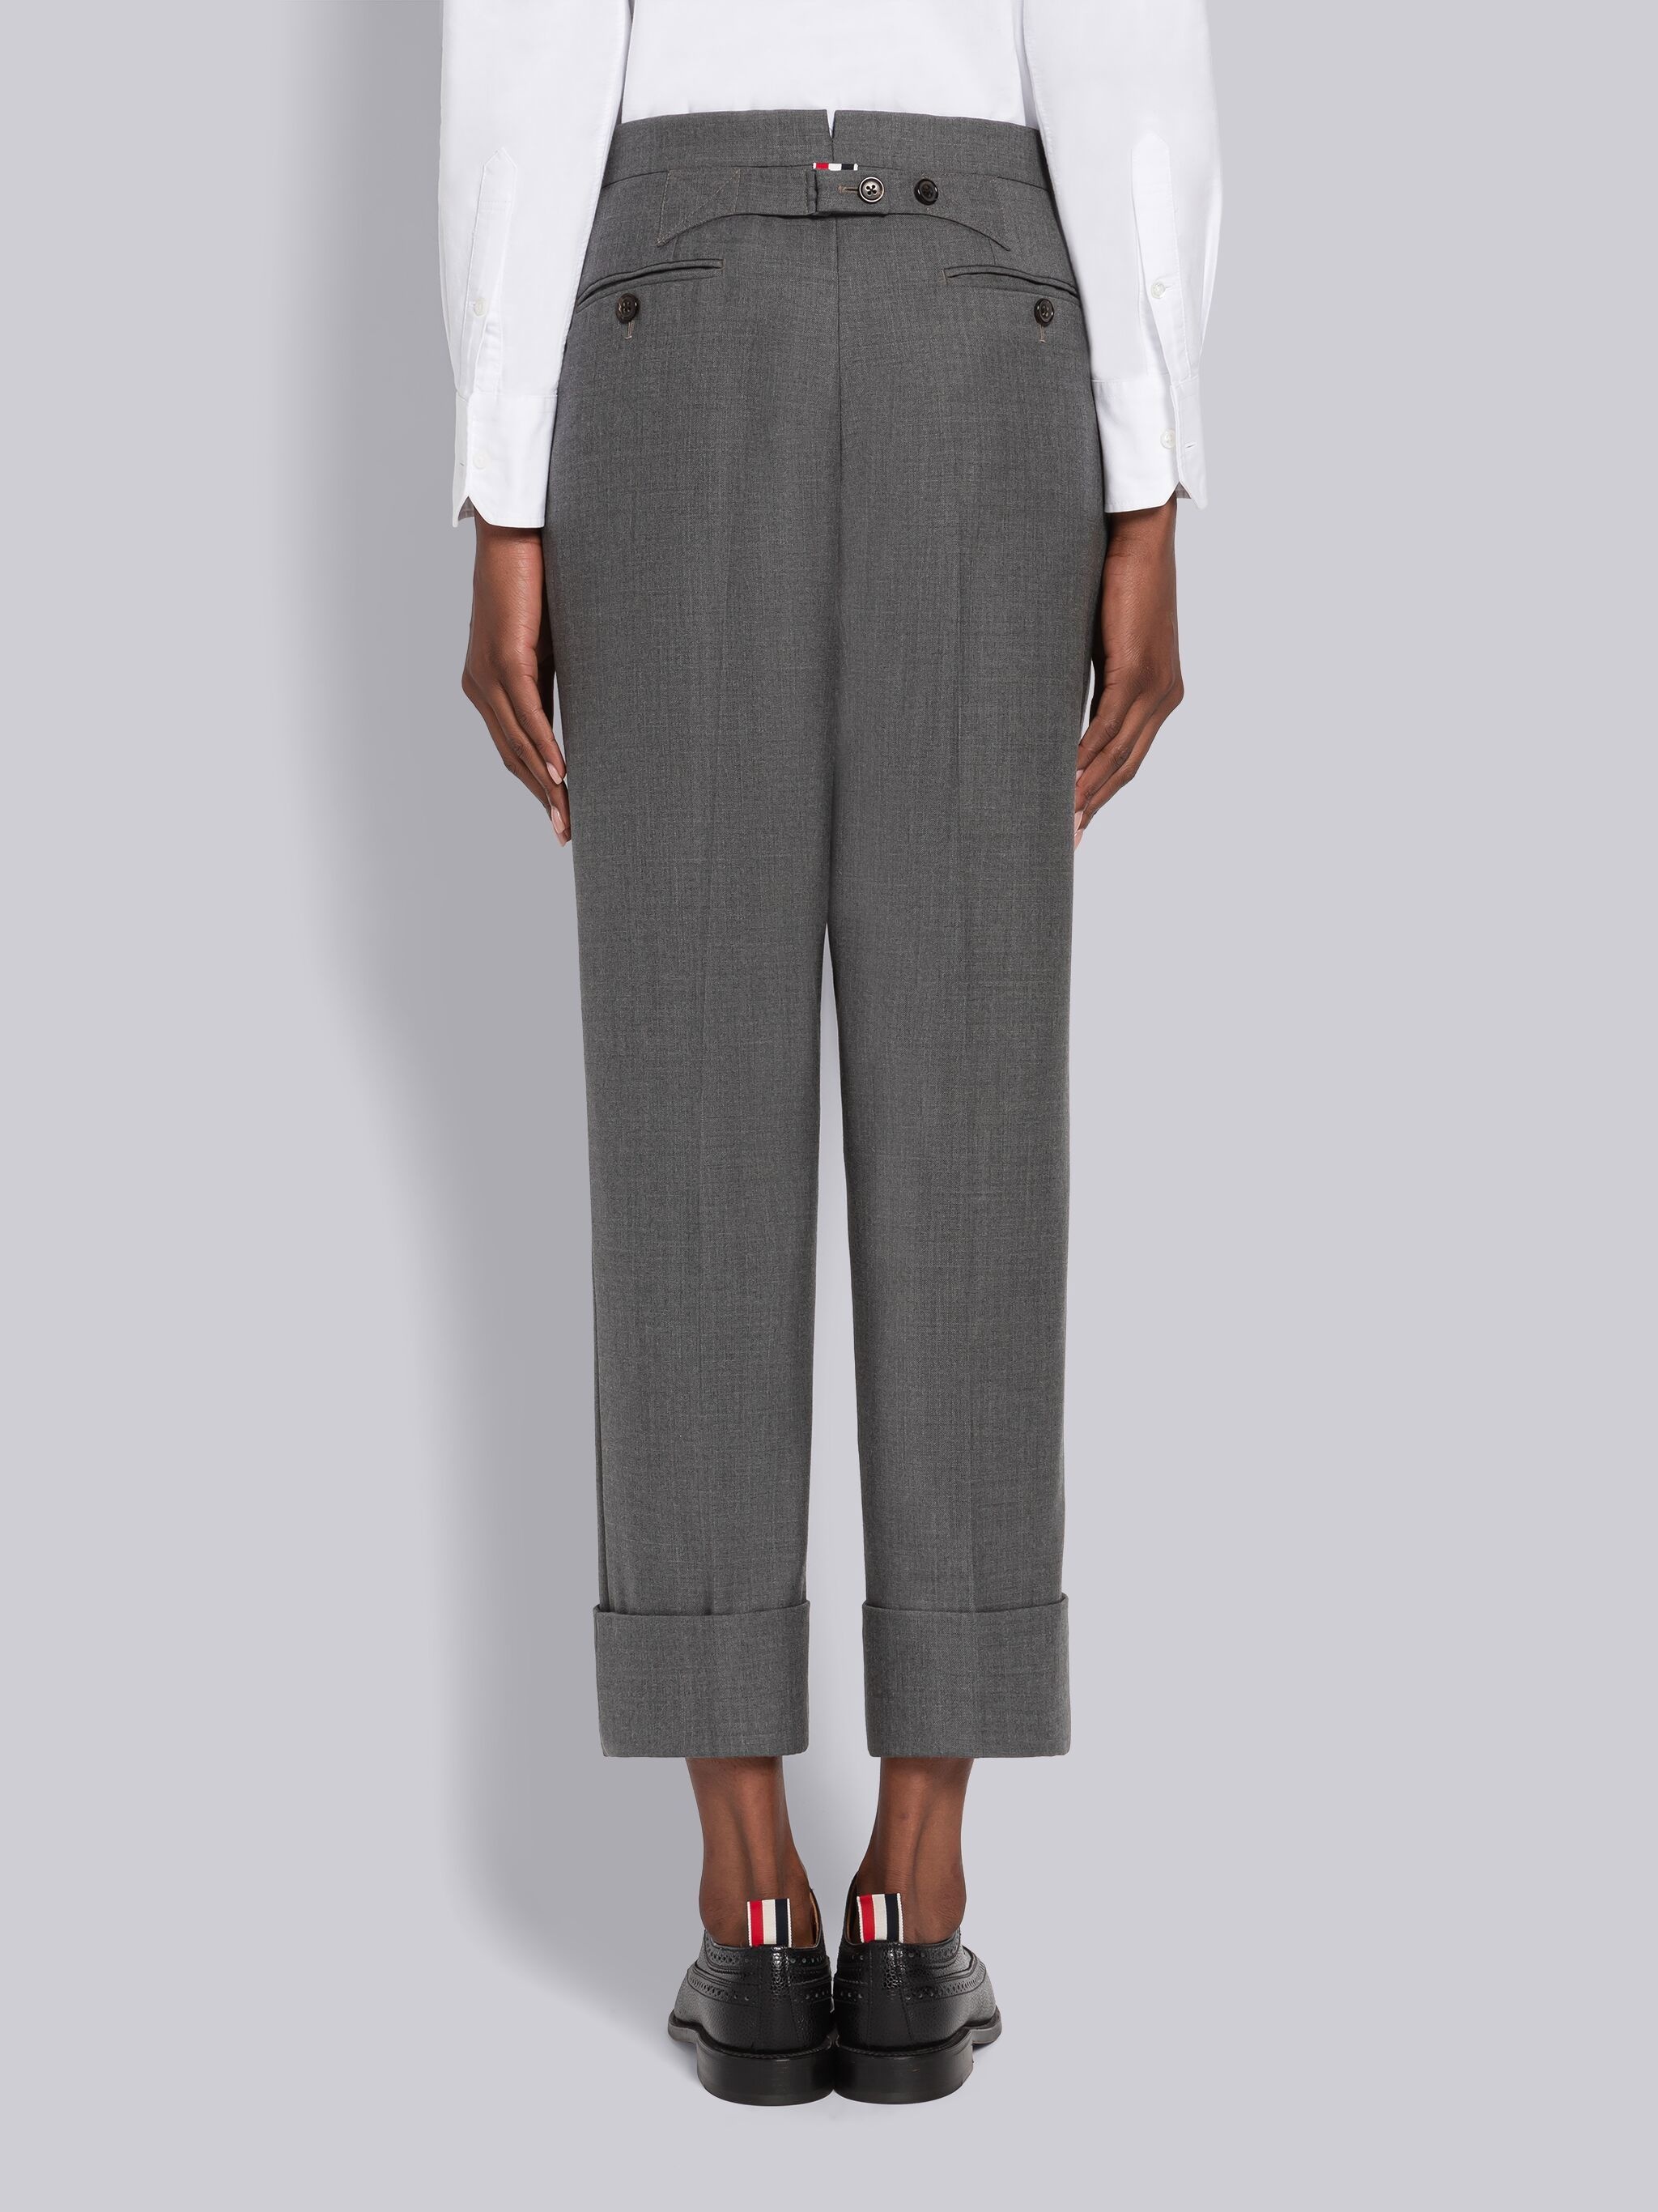 Medium Grey Super 120's Twill Menswear Fit Classic Trouser - 3